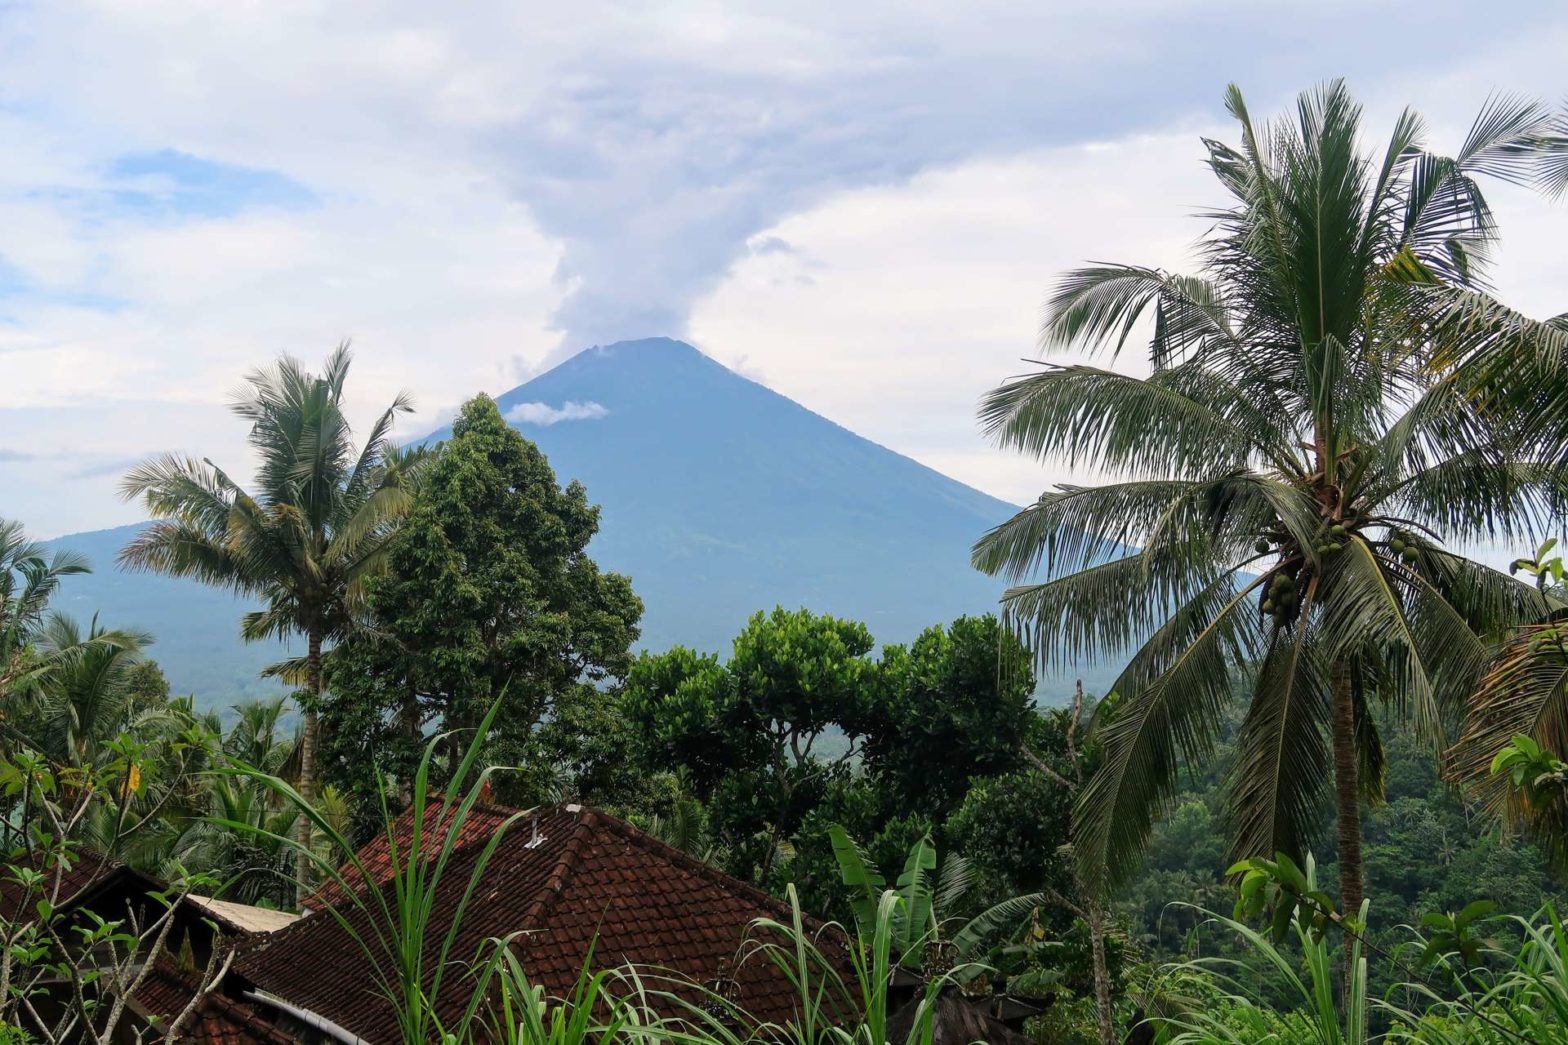 Mount Agung in Bali